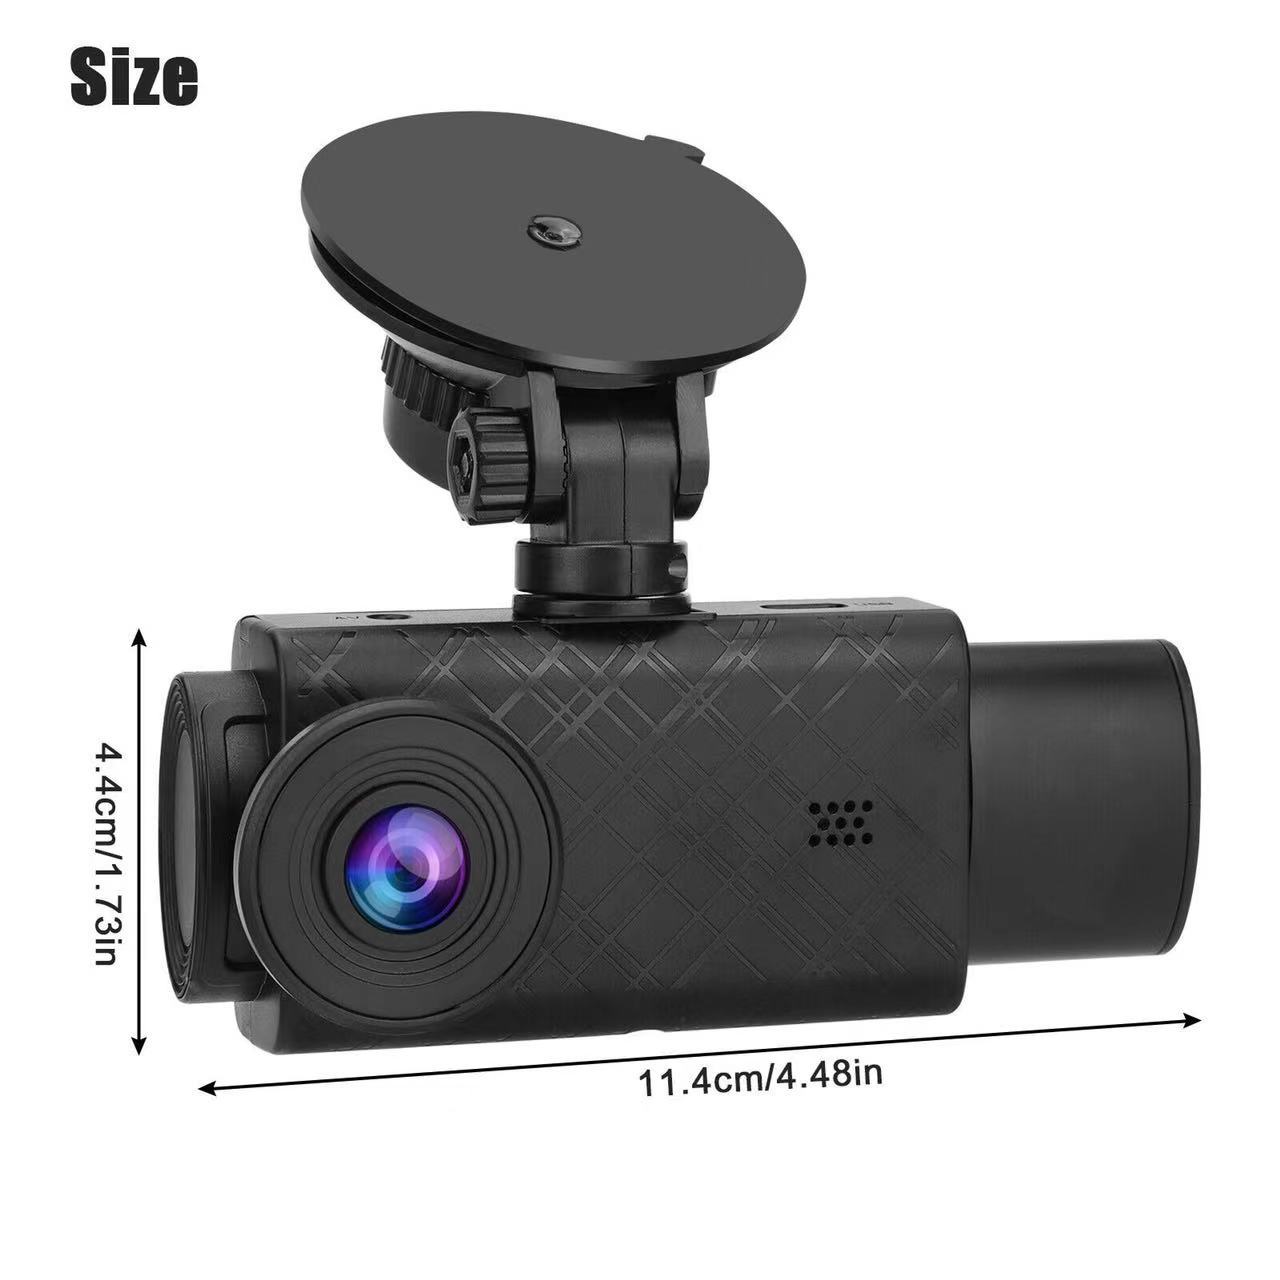 2,0 -дюймовый автомобиль DVR 3 каналы Dash Cam Cam Recorder Black Box Dual Lens DVR с задним видом петли камеры Записывает широкоугольный объектив S11